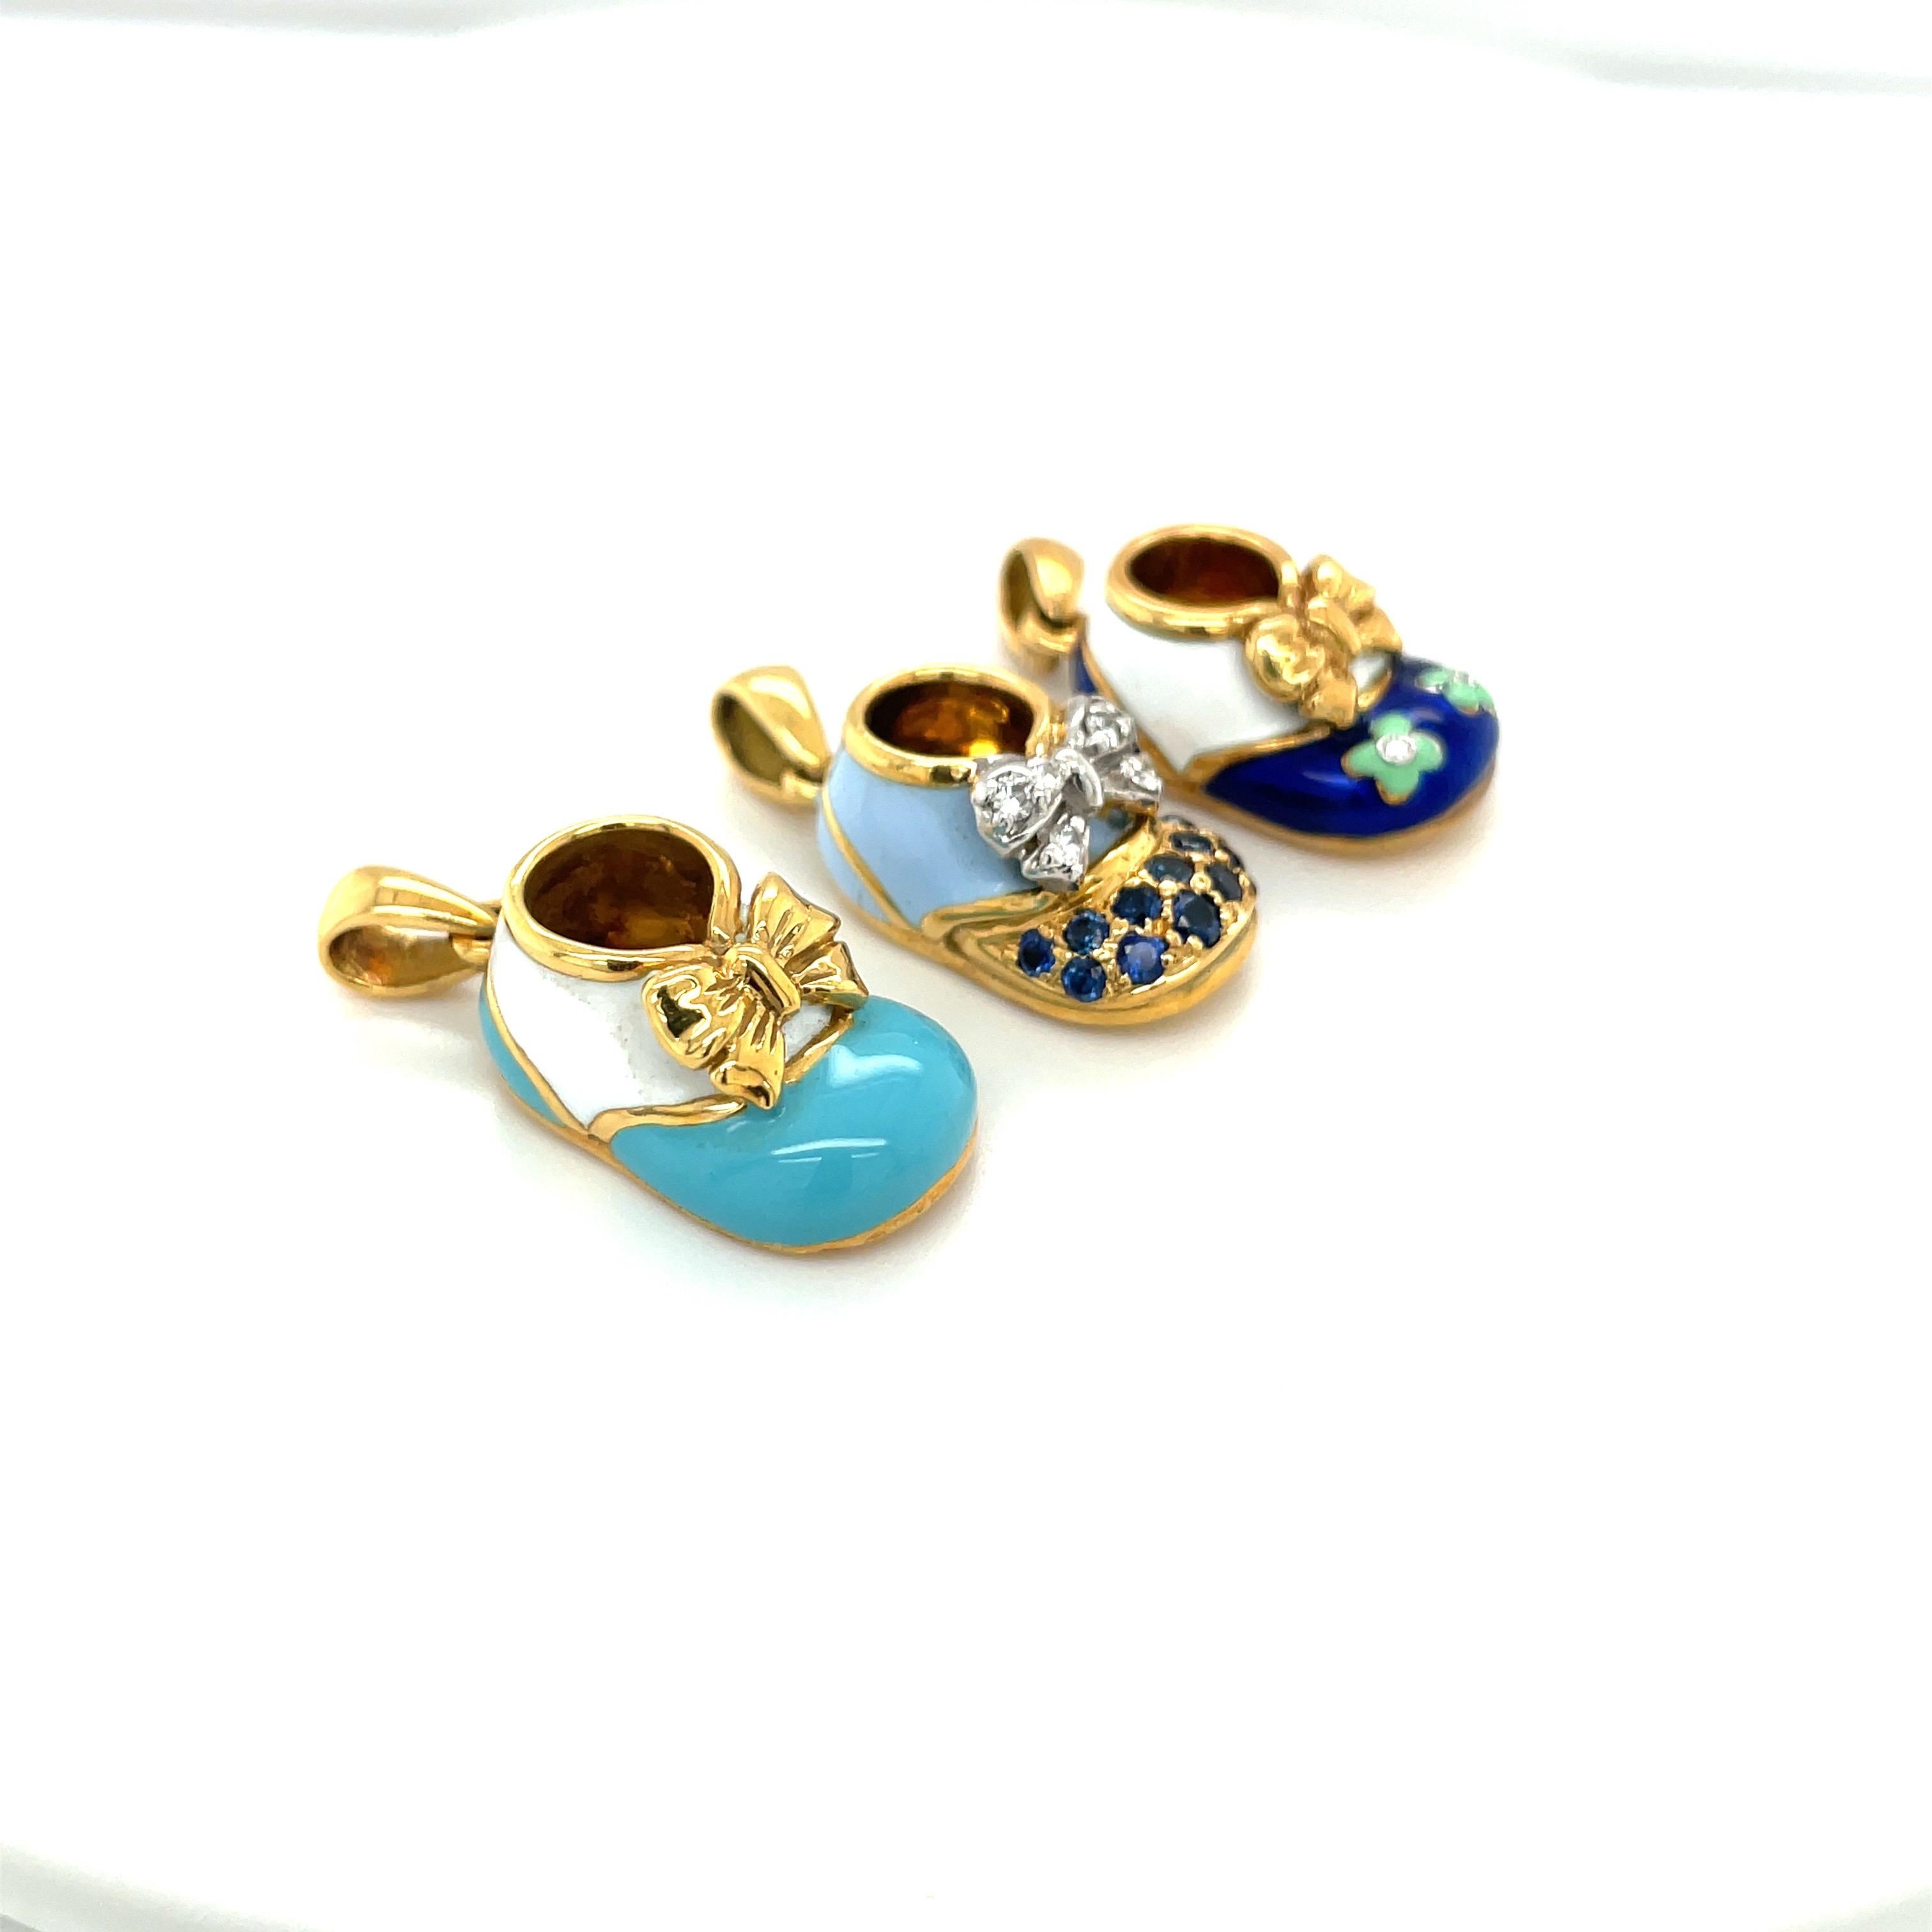 Taille ronde Breloque chaussure pour bébé 18KT YG en diamants, saphirs bleus et émail avec nœud en vente